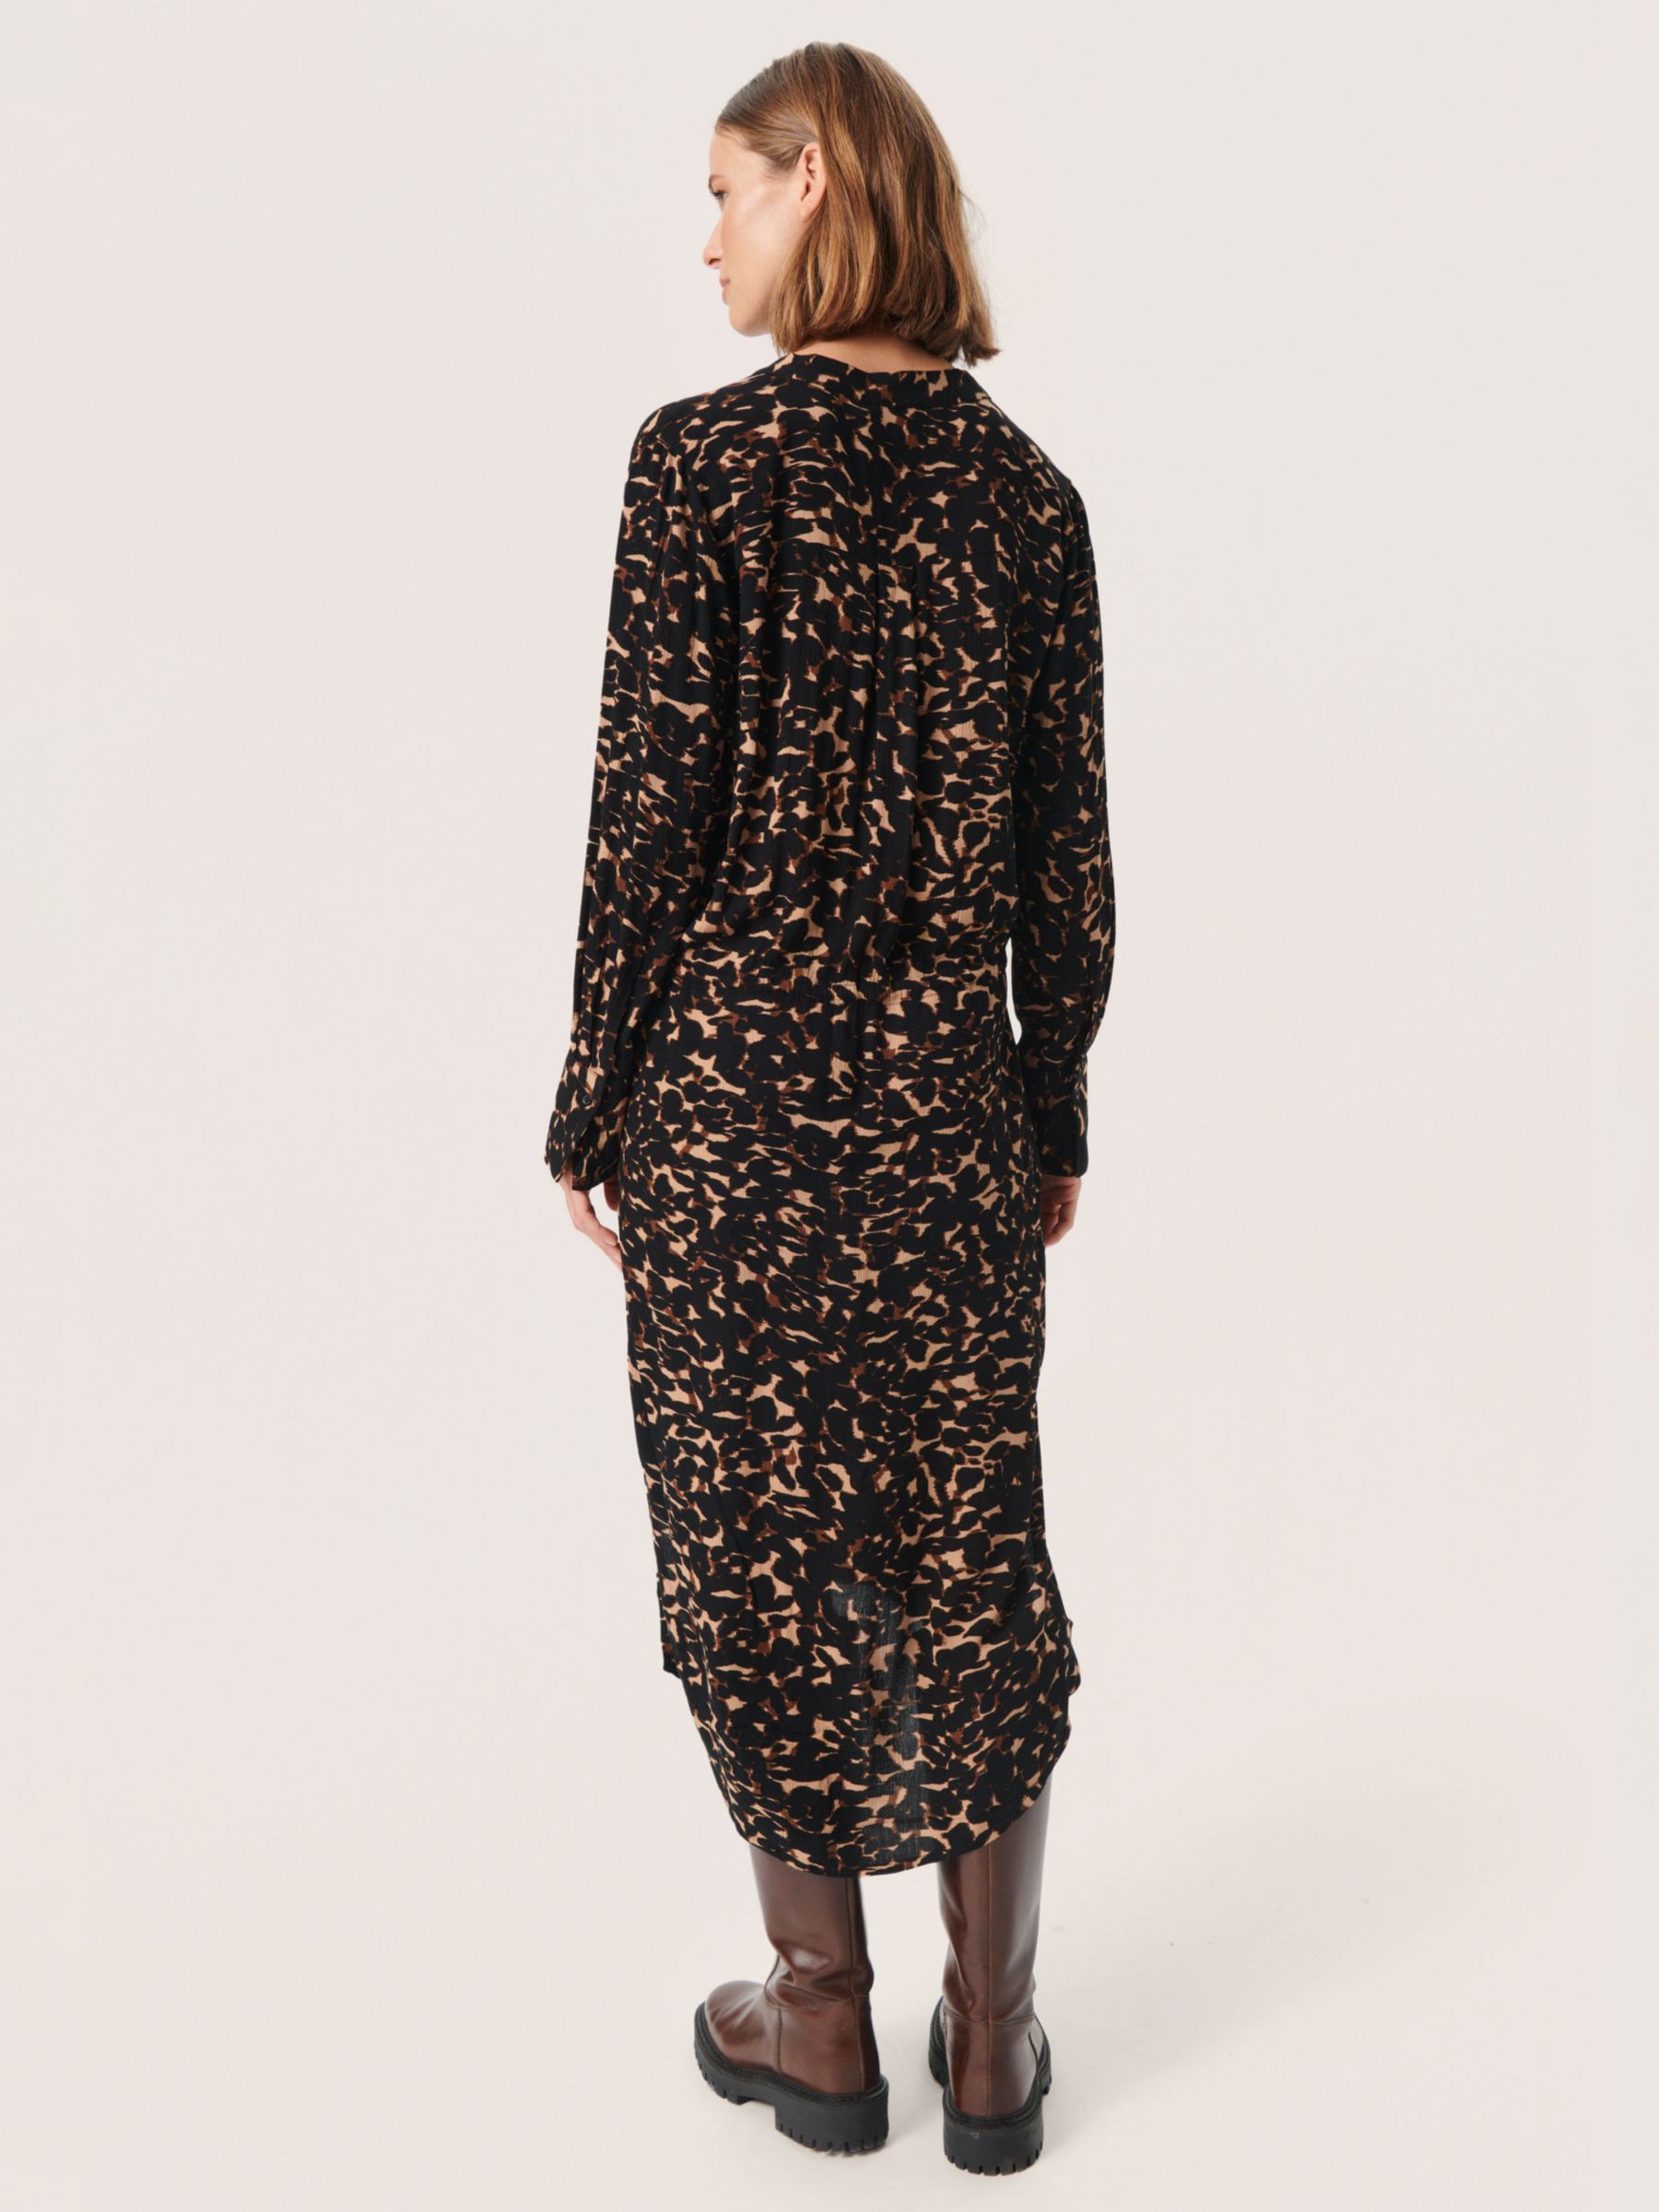 Buy Soaked In Luxury Zaya Printed Dress, Tigers Eye Leaf Online at johnlewis.com